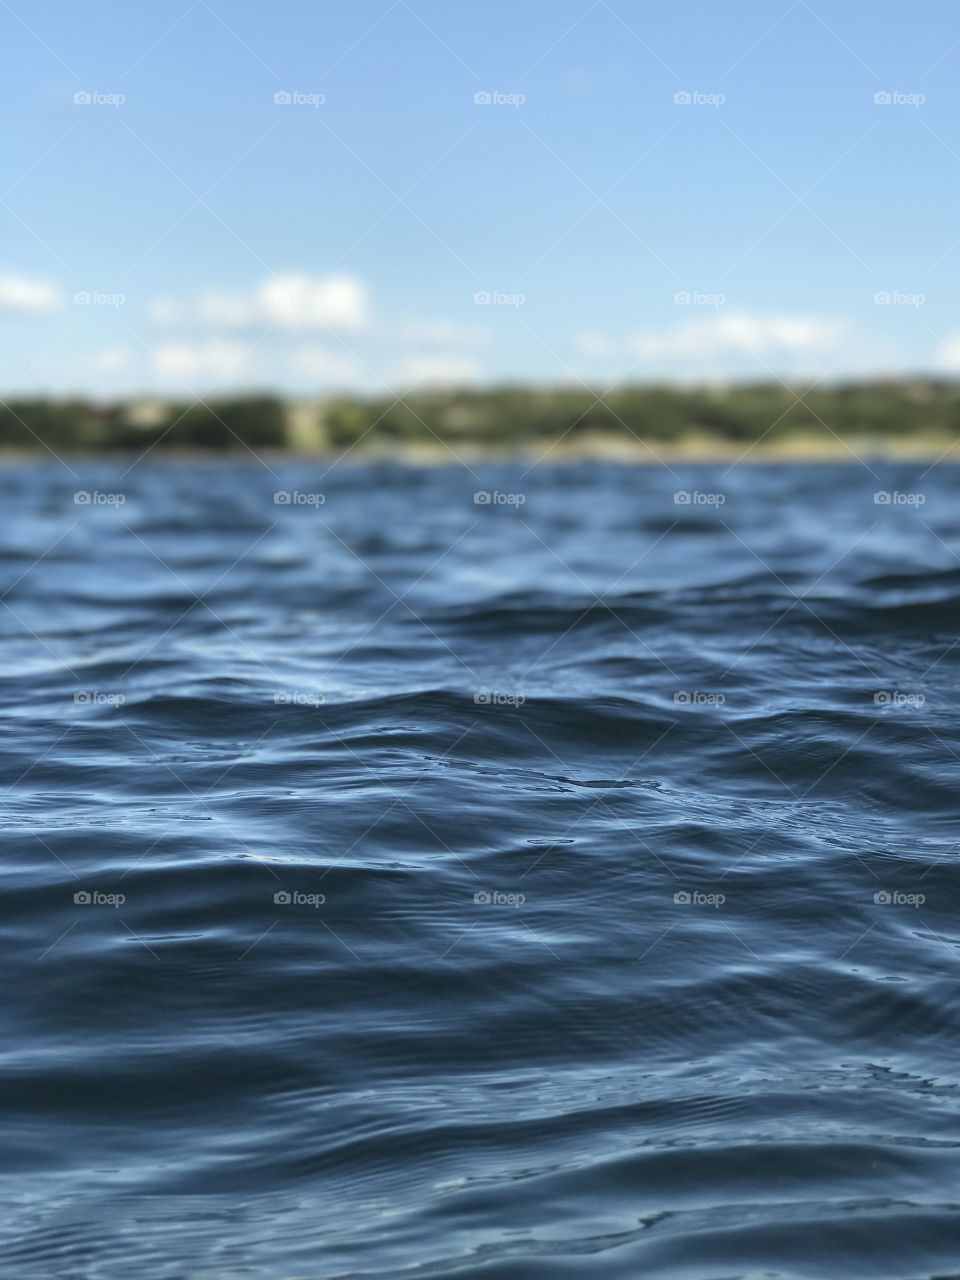 Lake water